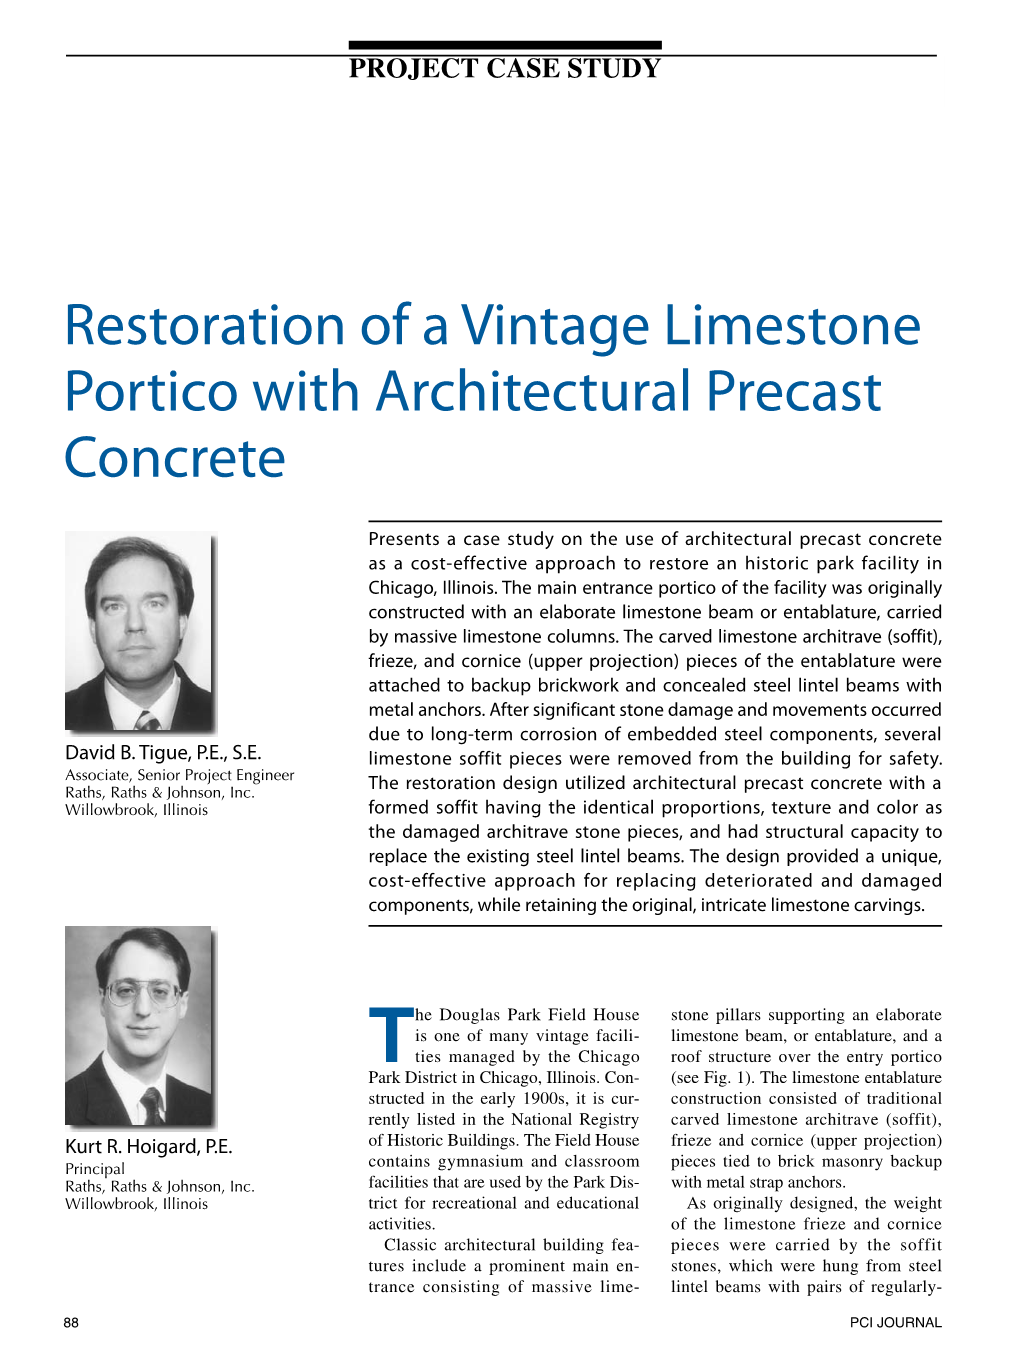 Restoration of a Vintage Limestone Portico with Architectural Precast Concrete